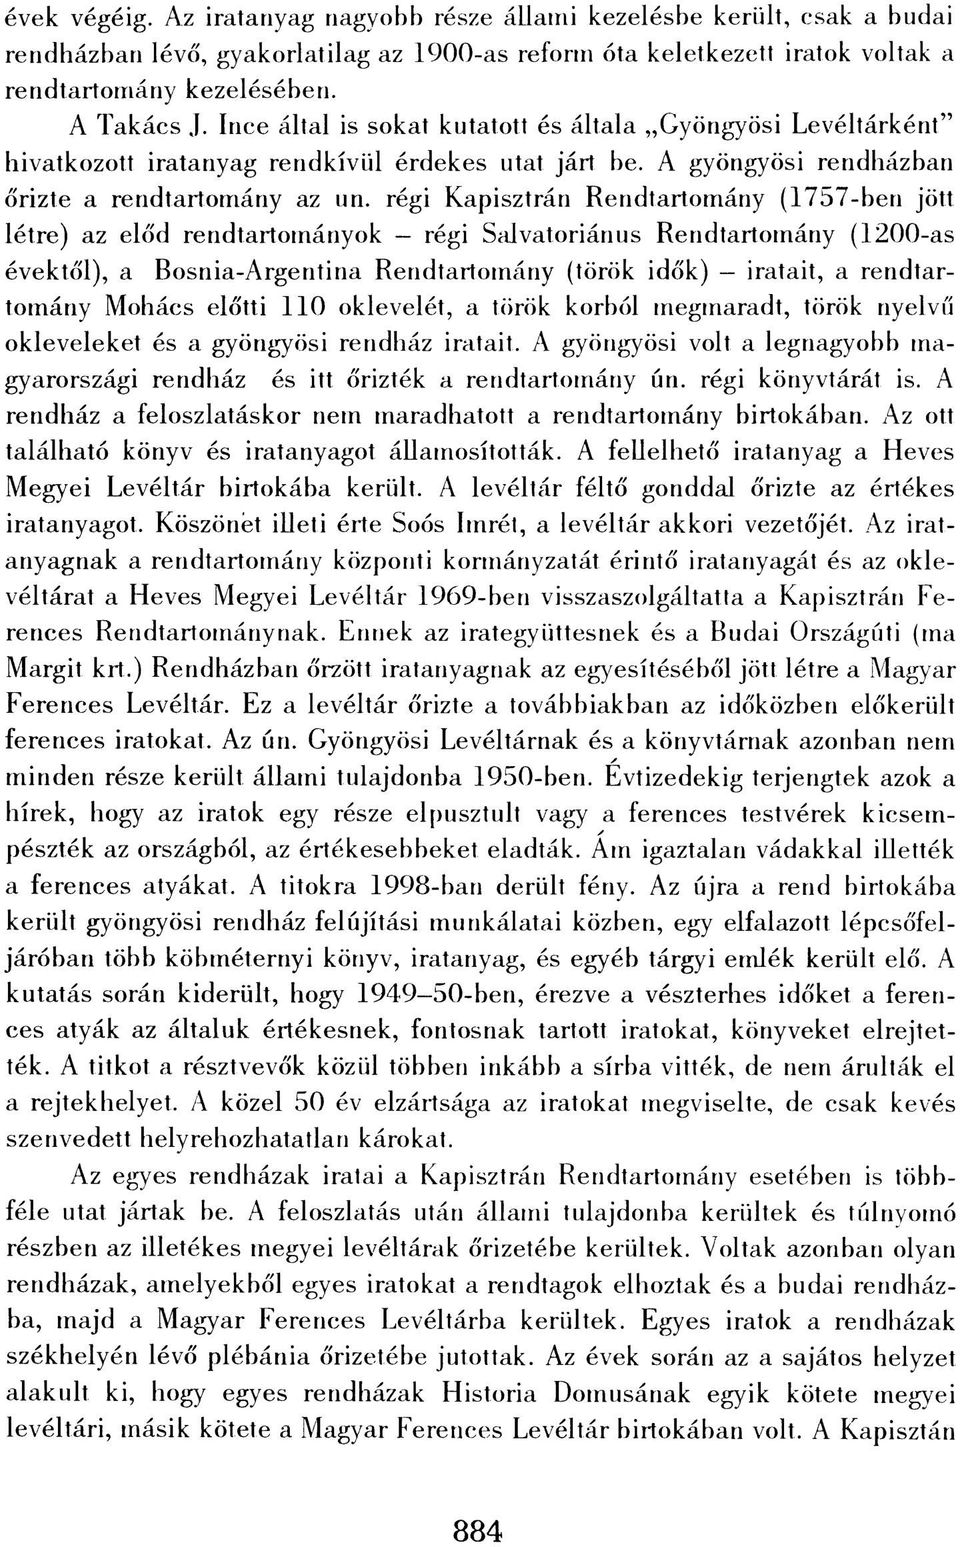 régi Kapisztrán Rendtartomány (1757-ben jött létre) az előd rendtartományok régi Salvatoriánus Rendtartomány (1200-as évektől), a Bosnia-Argentina Rendtartomány (török idők) iratait, a rendtartomány